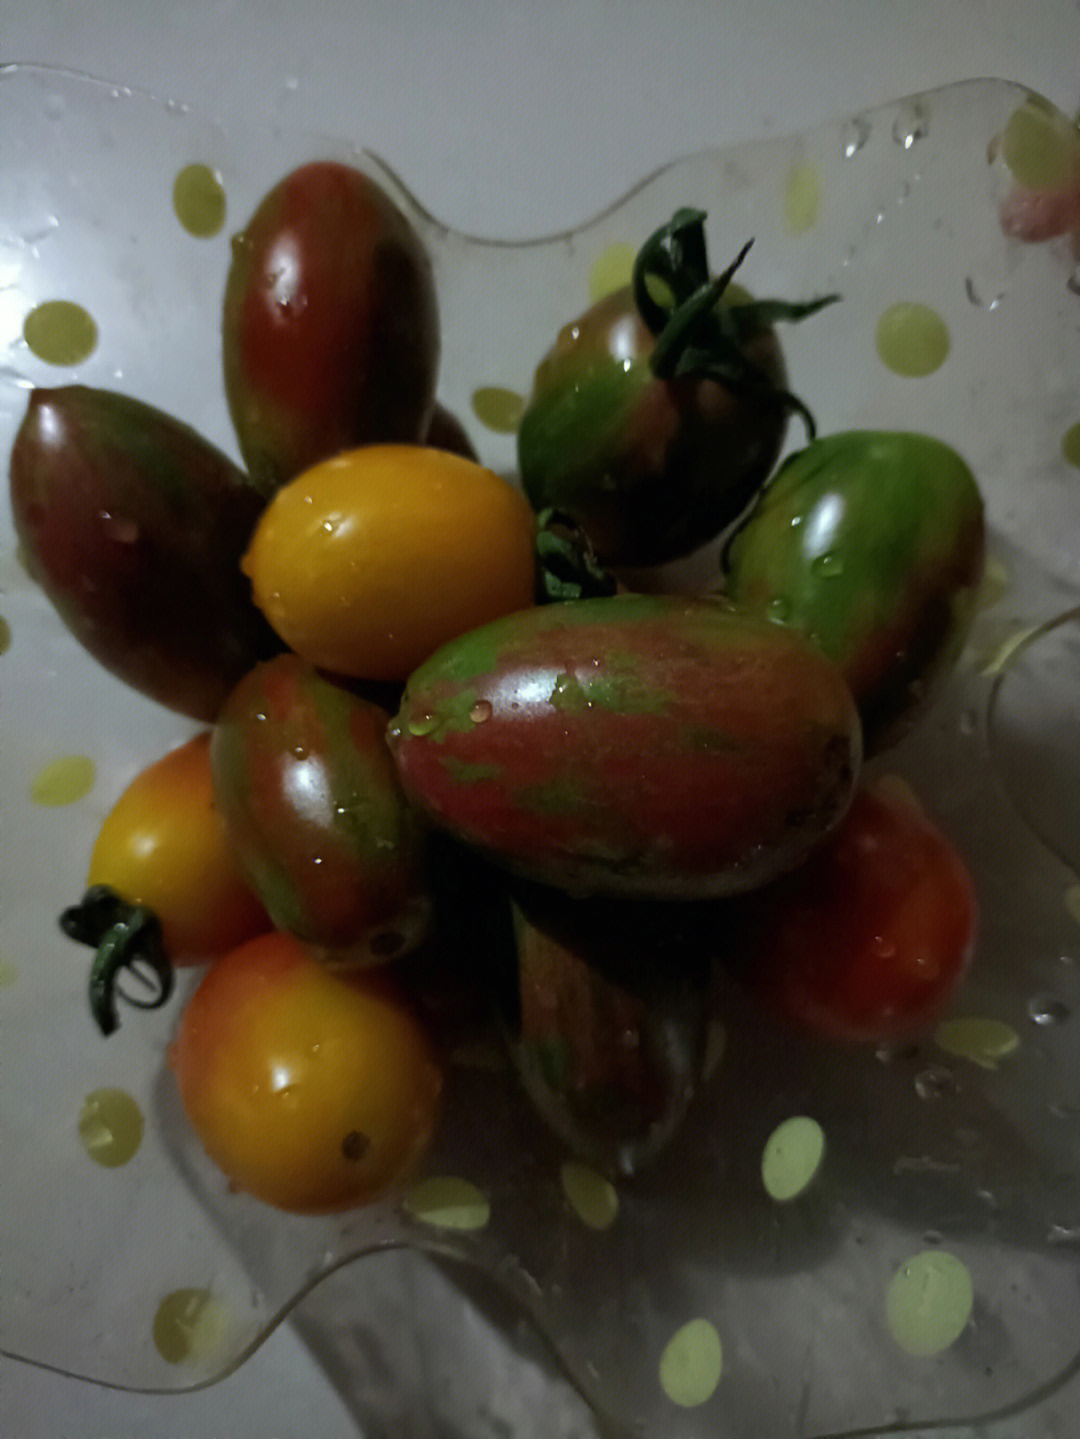 小西红柿颜色图片